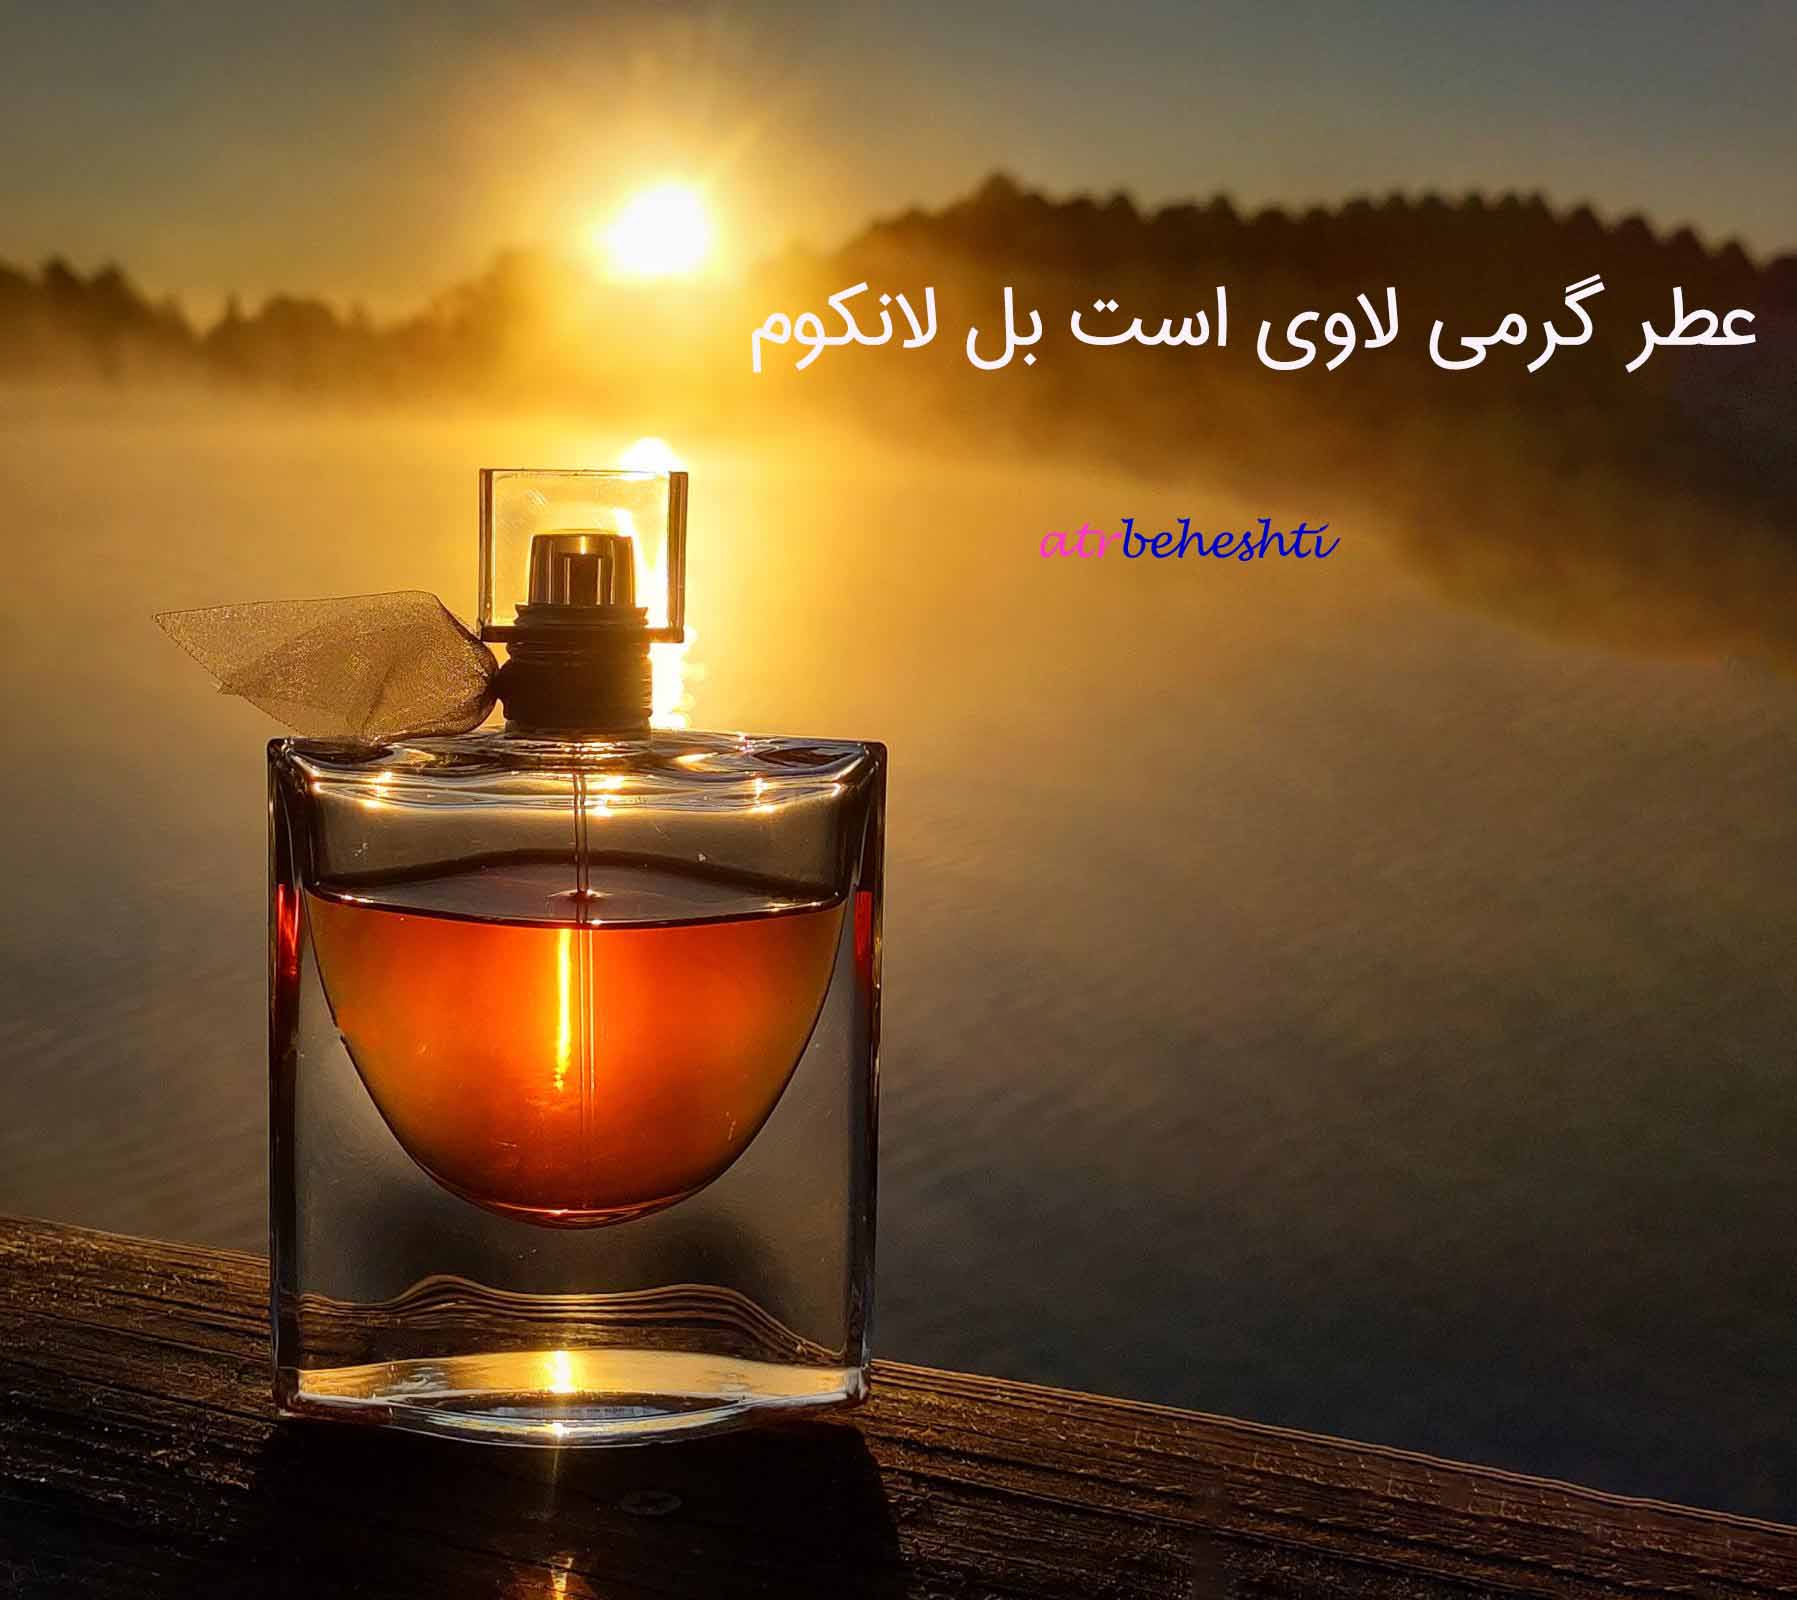 عطر گرمی لاوی است بل لانکوم - عطر بهشتی